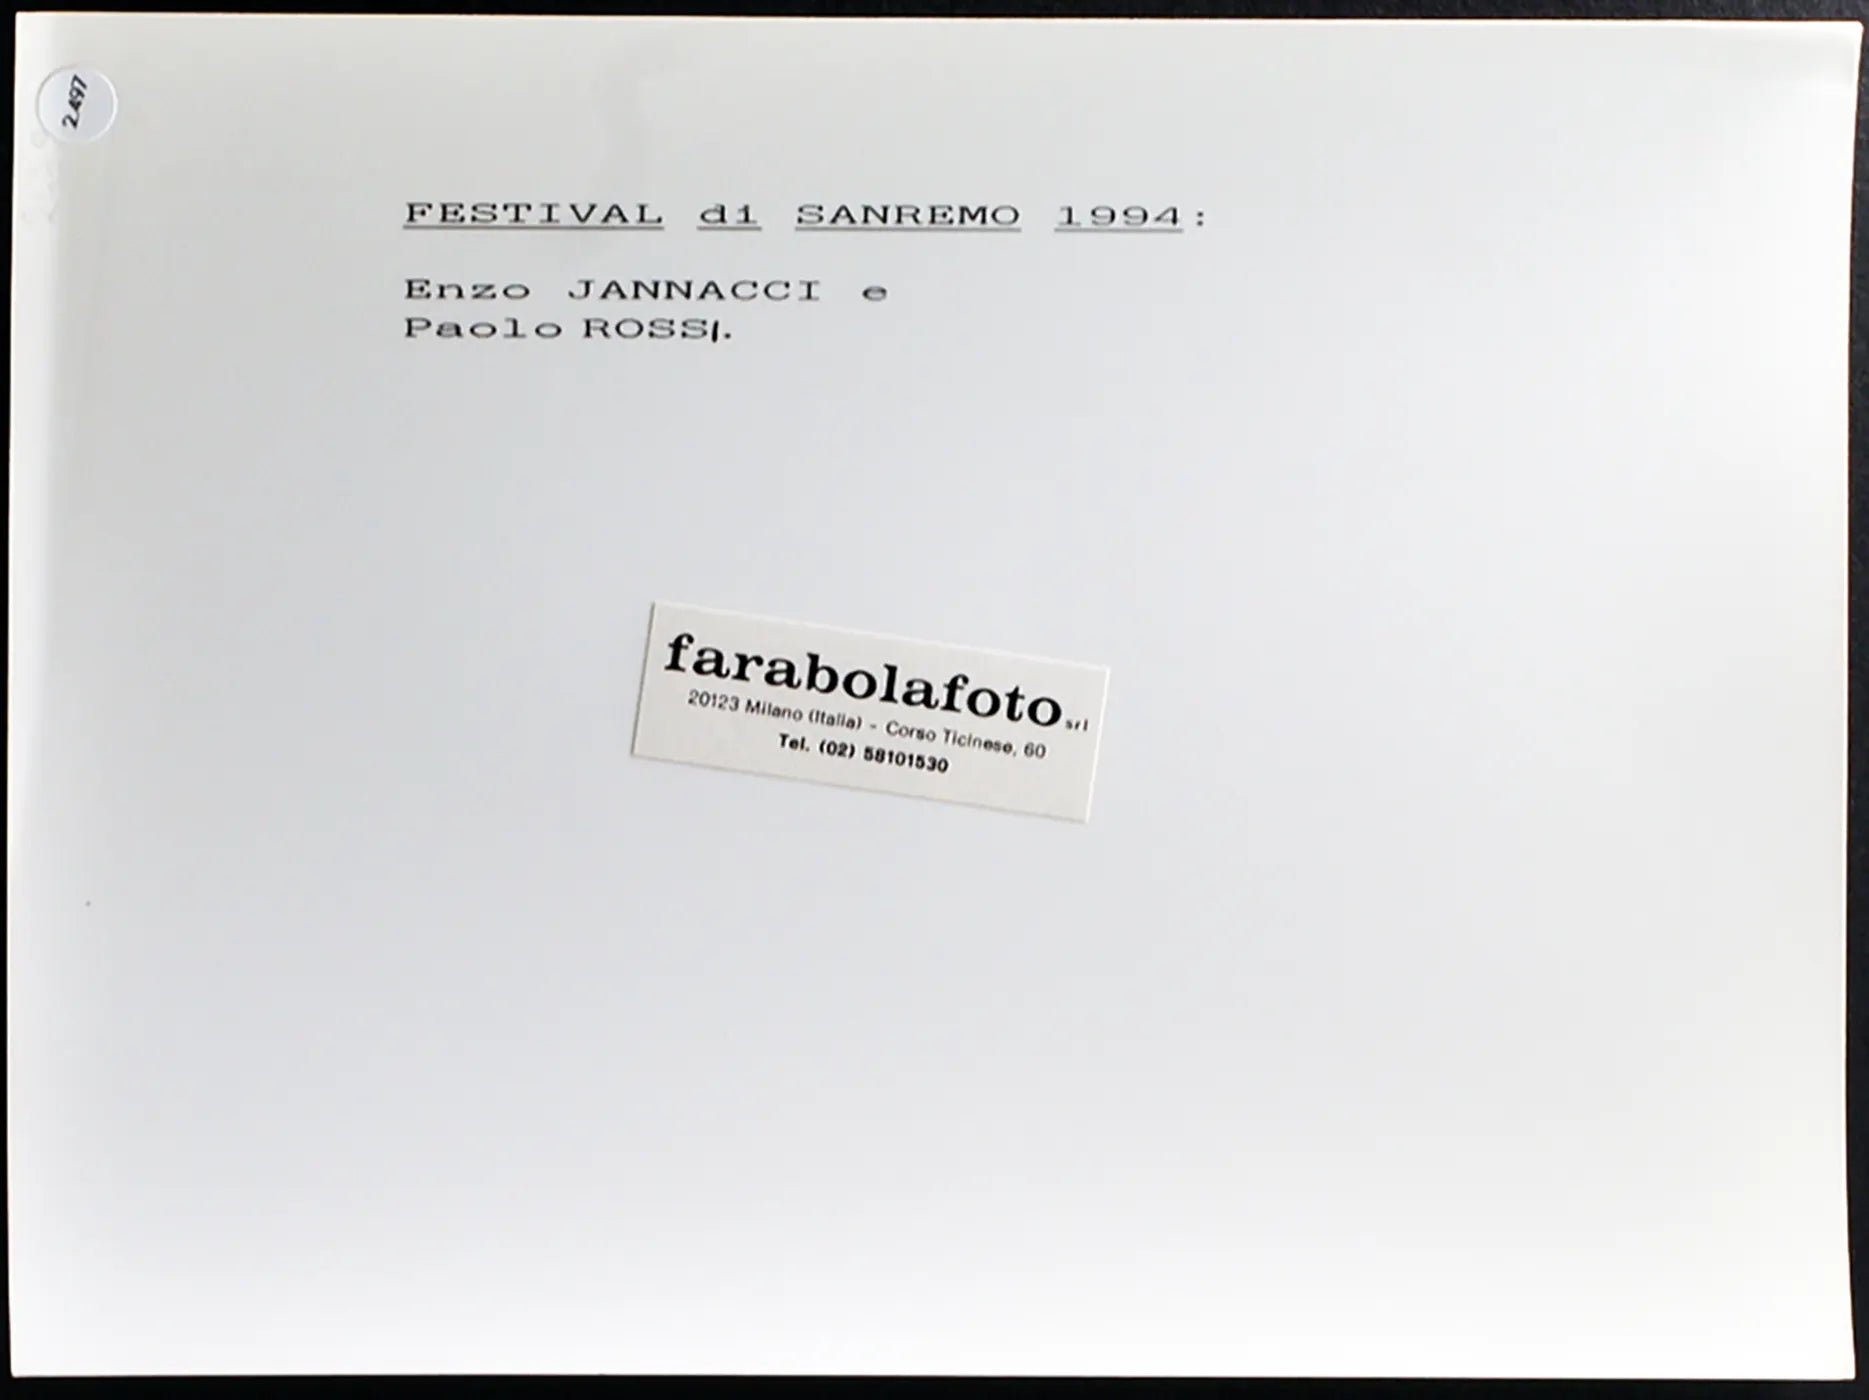 Jannacci e Paolo Rossi Sanremo 1994 Ft 2497 - Stampa 24x18 cm - Farabola Stampa ai sali d'argento